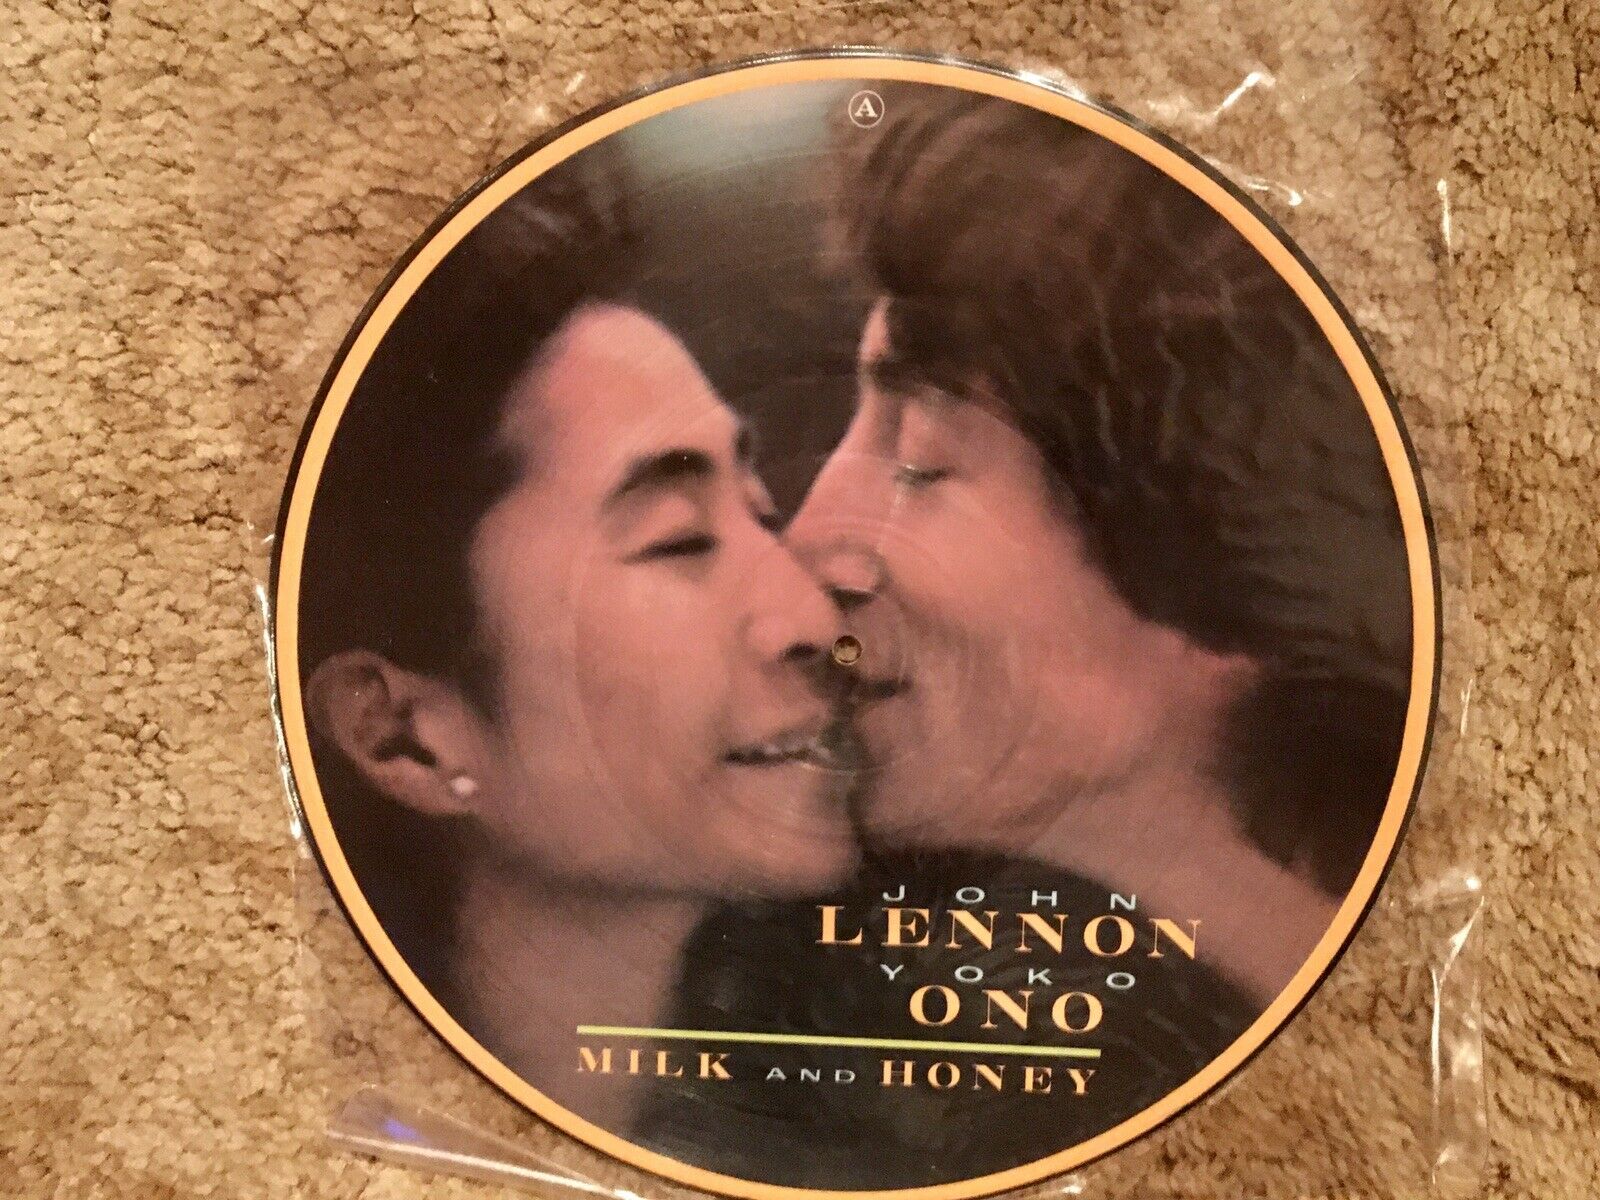 John Lennon Milk And Honey Vinyl Picture Disc 1984